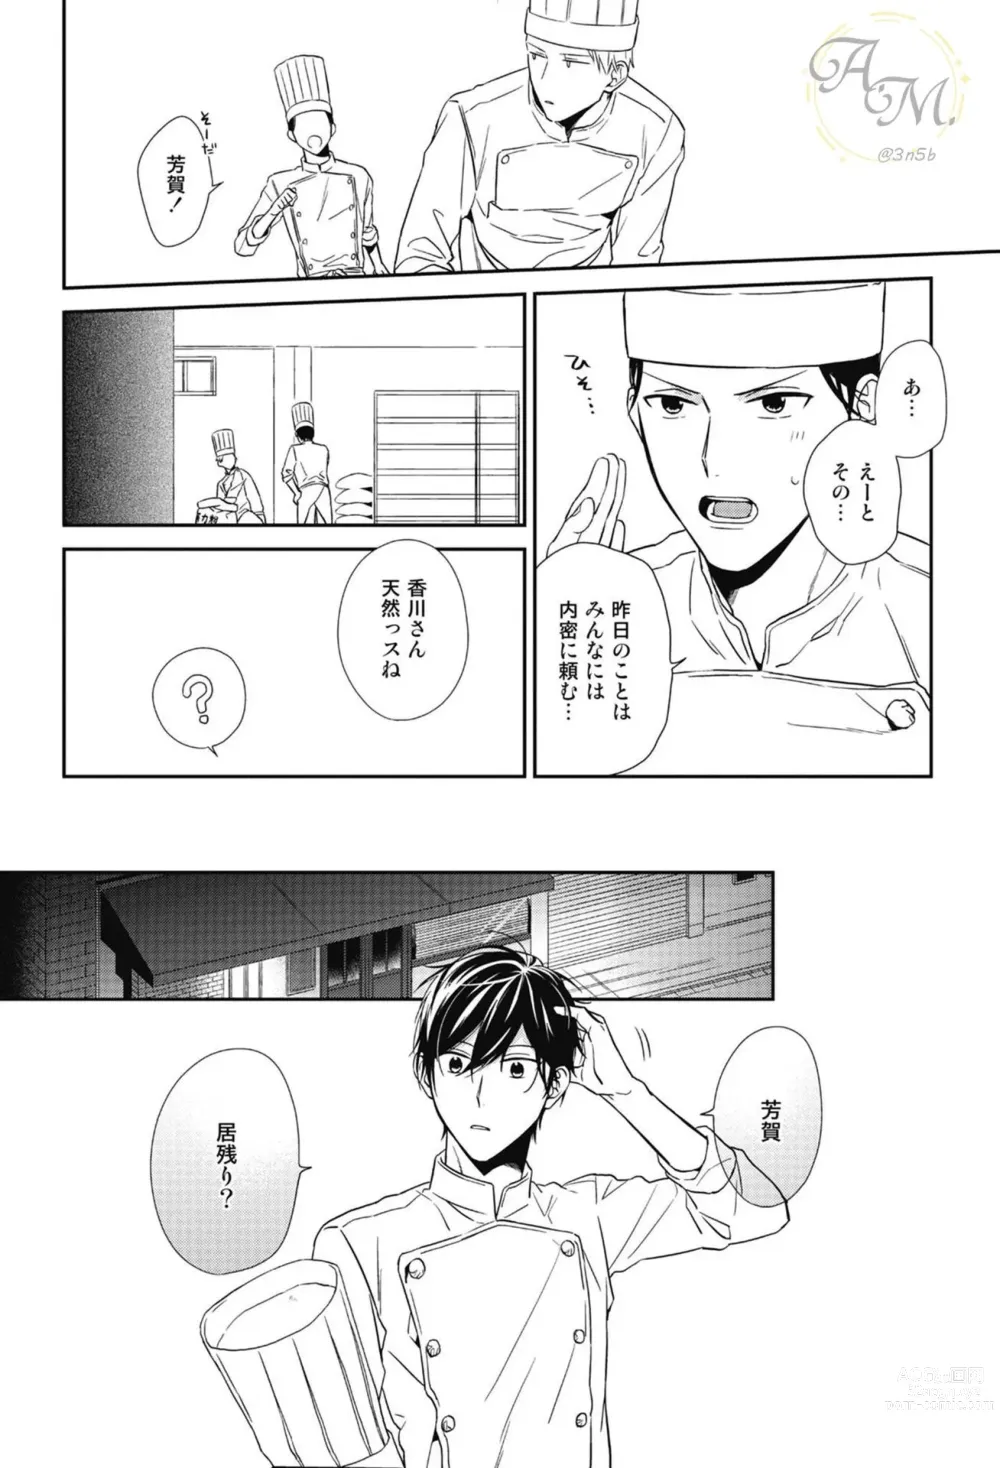 Page 20 of manga SWEET to Yobu ni wa Mada Hayai - Its still early to call a Sweet.